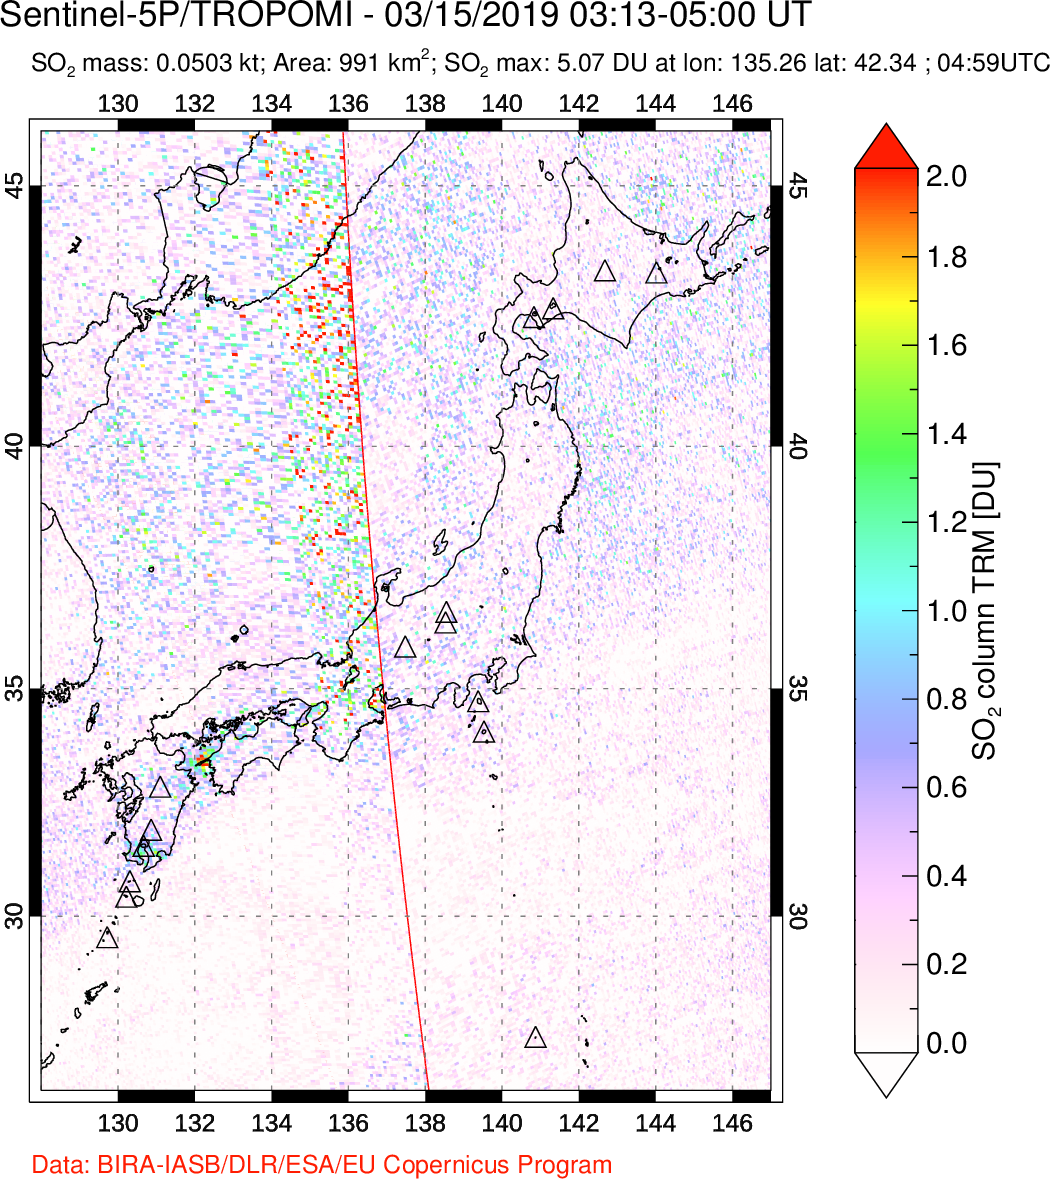 A sulfur dioxide image over Japan on Mar 15, 2019.